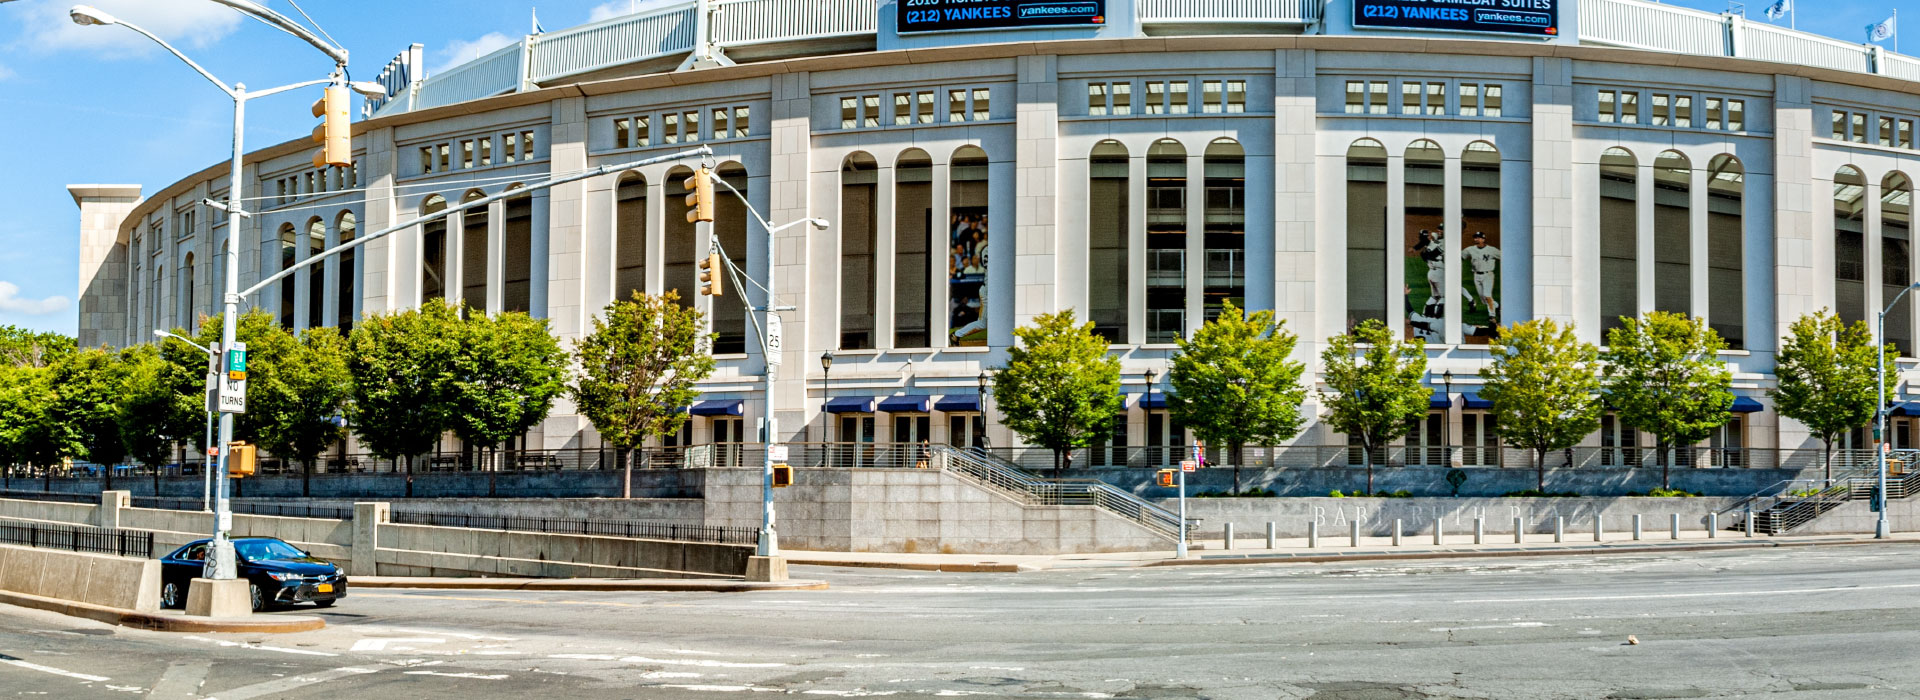 The Bronx - Yankee Stadium